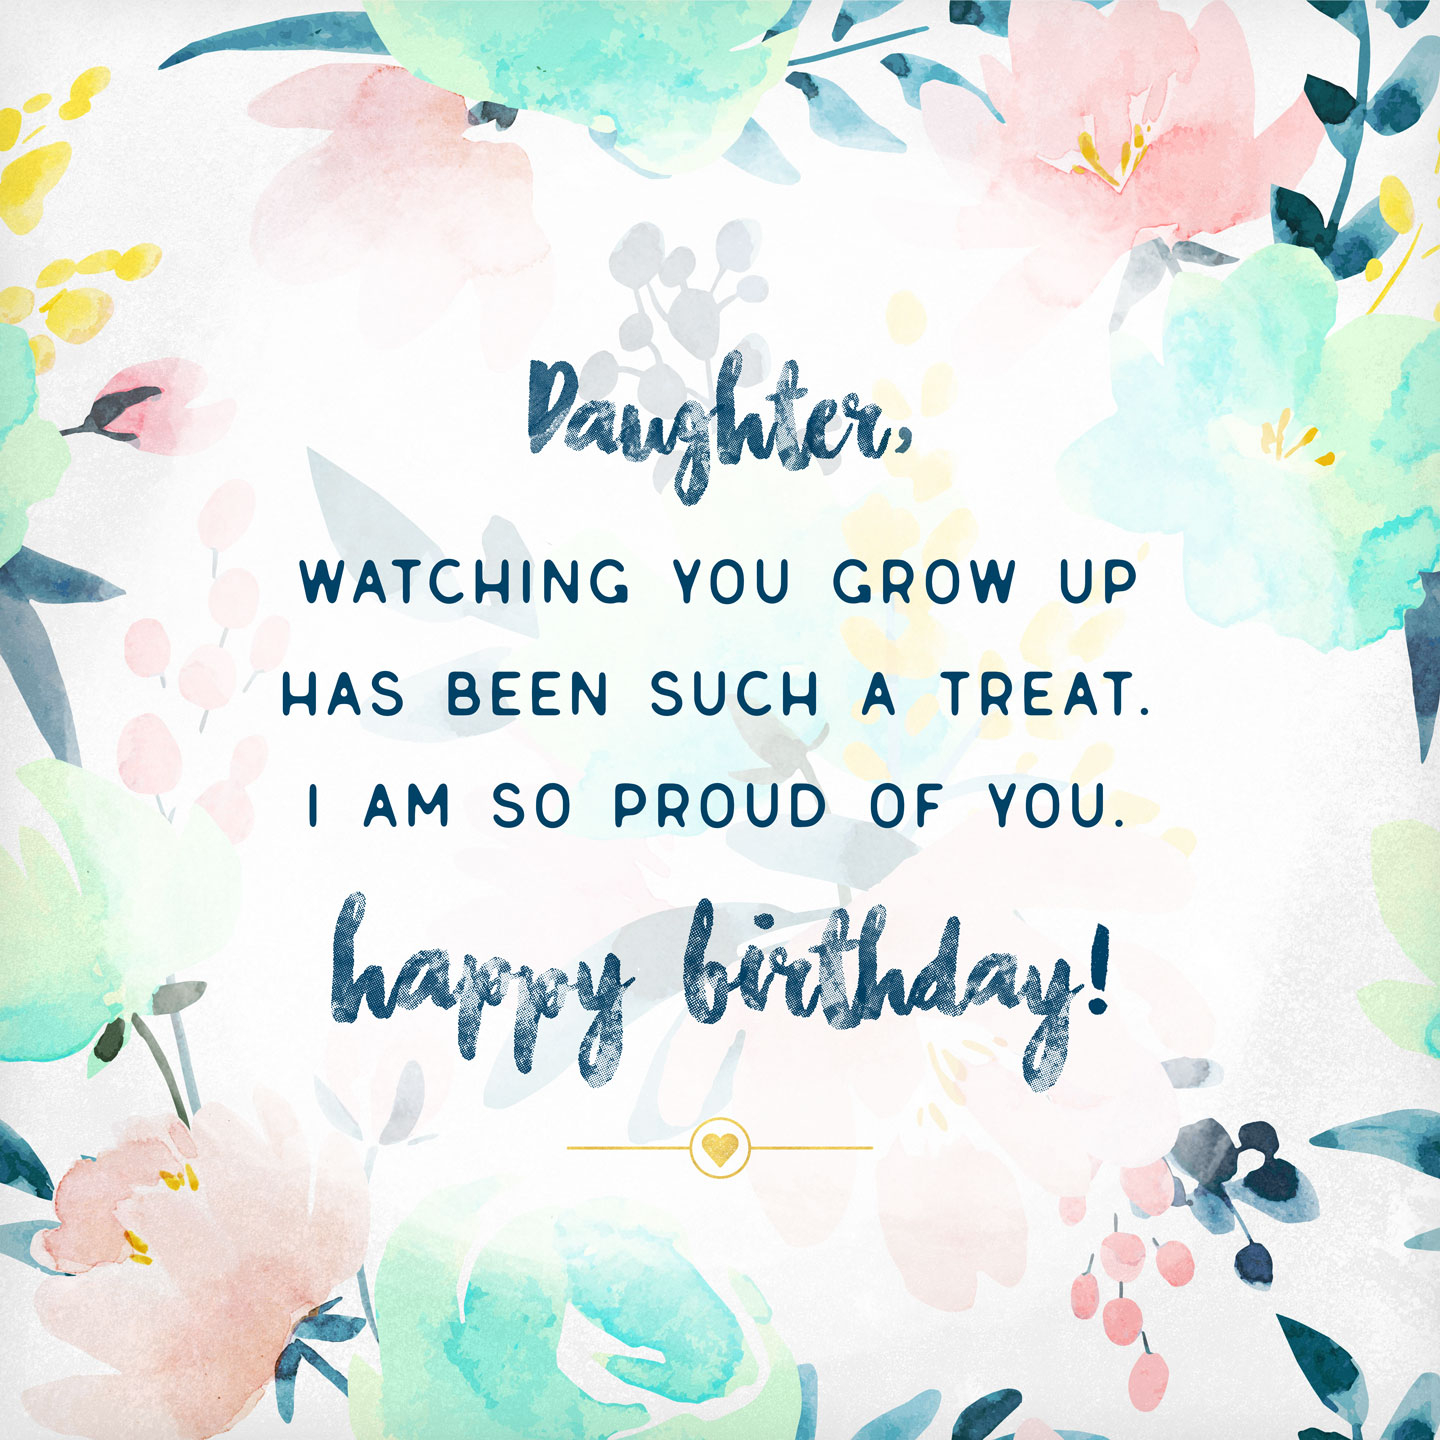 Cute Birthday Card Ideas For Girlfriend What To Write In A Birthday Card 48 Birthday Messages And Wishes